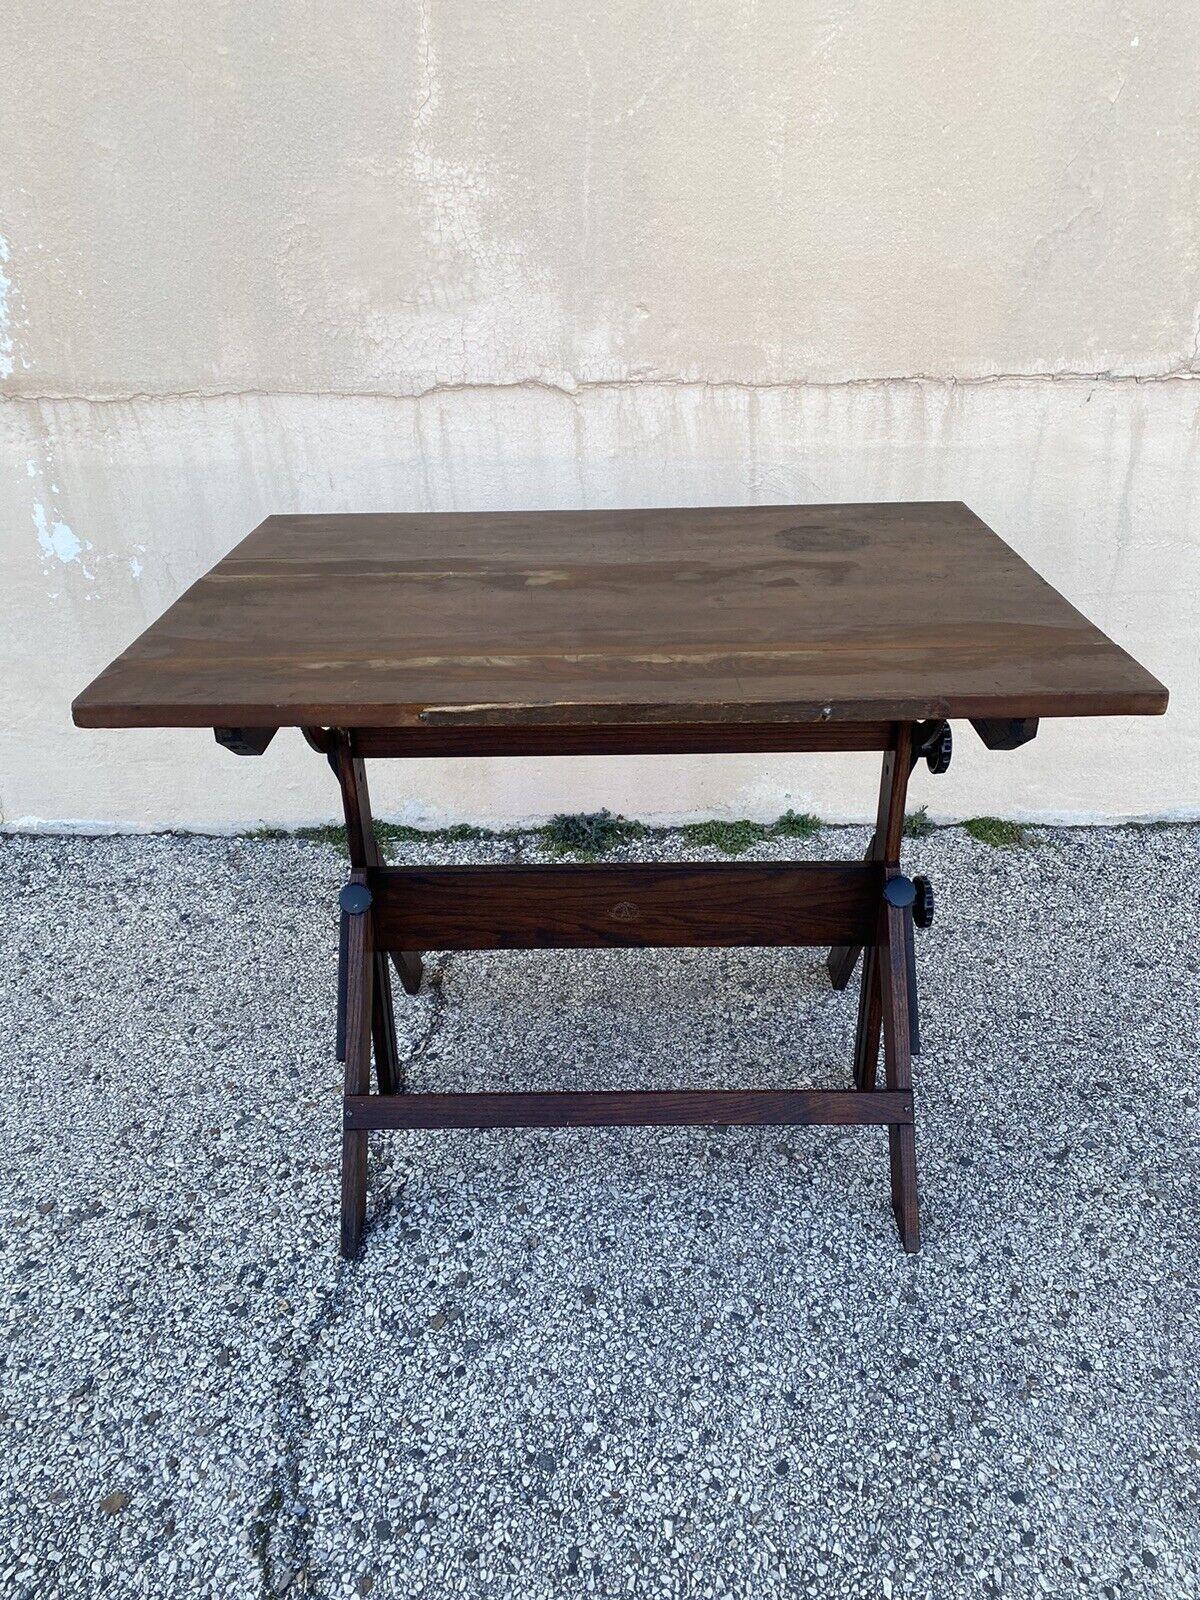 Arts and Crafts Vintage Anco Bilt Oak Wood Adjustable Drafting Table Desk Industrial Work Stand